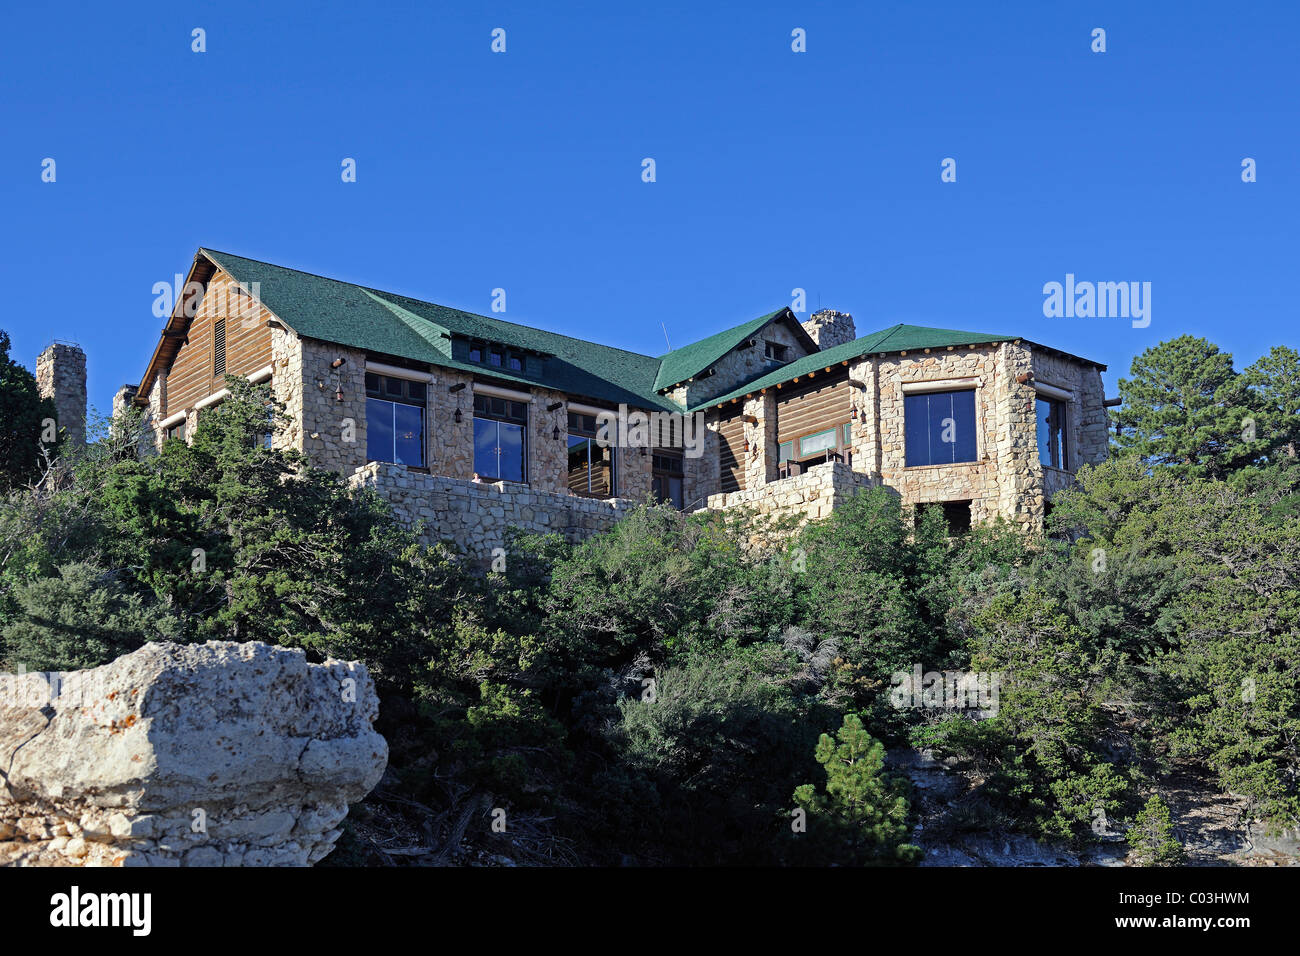 Grand Canyon Hotel Stockfotos Und Bilder Kaufen Alamy